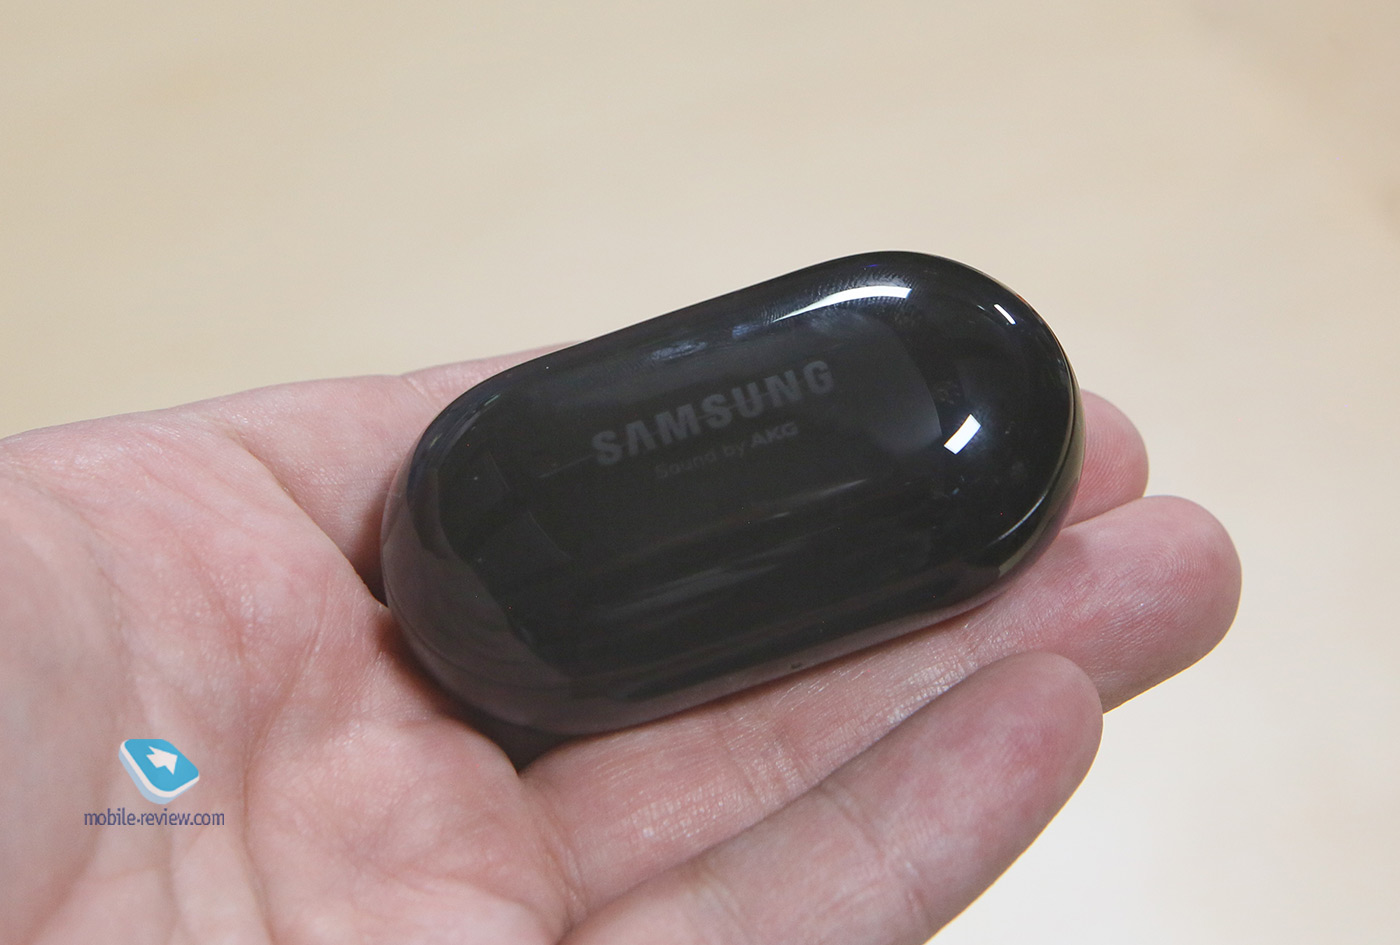 Обзор беспроводных наушников Samsung Galaxy Buds+ (SM-R175)